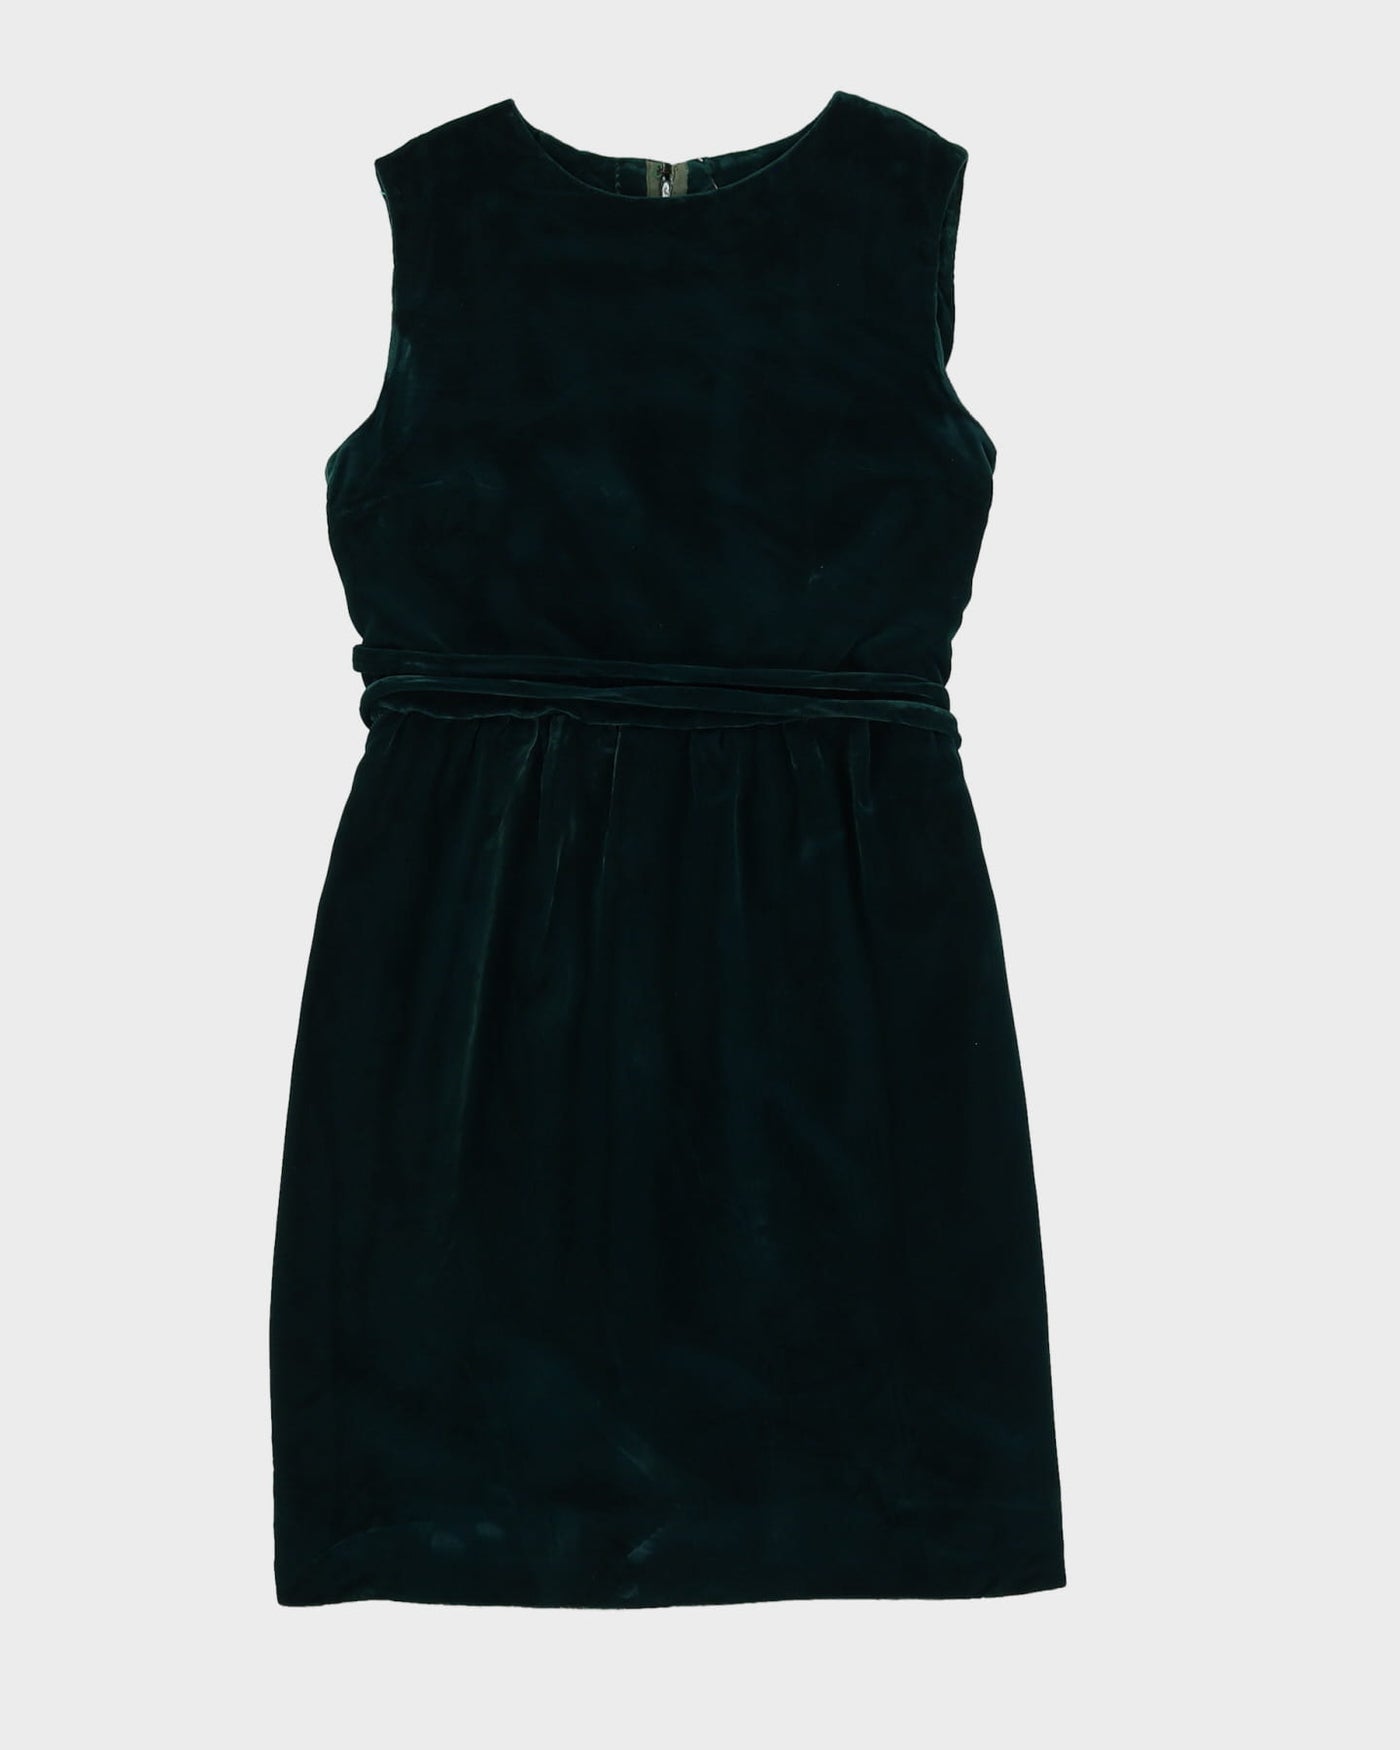 Vintage 1960s Green Velvet Dress - XS